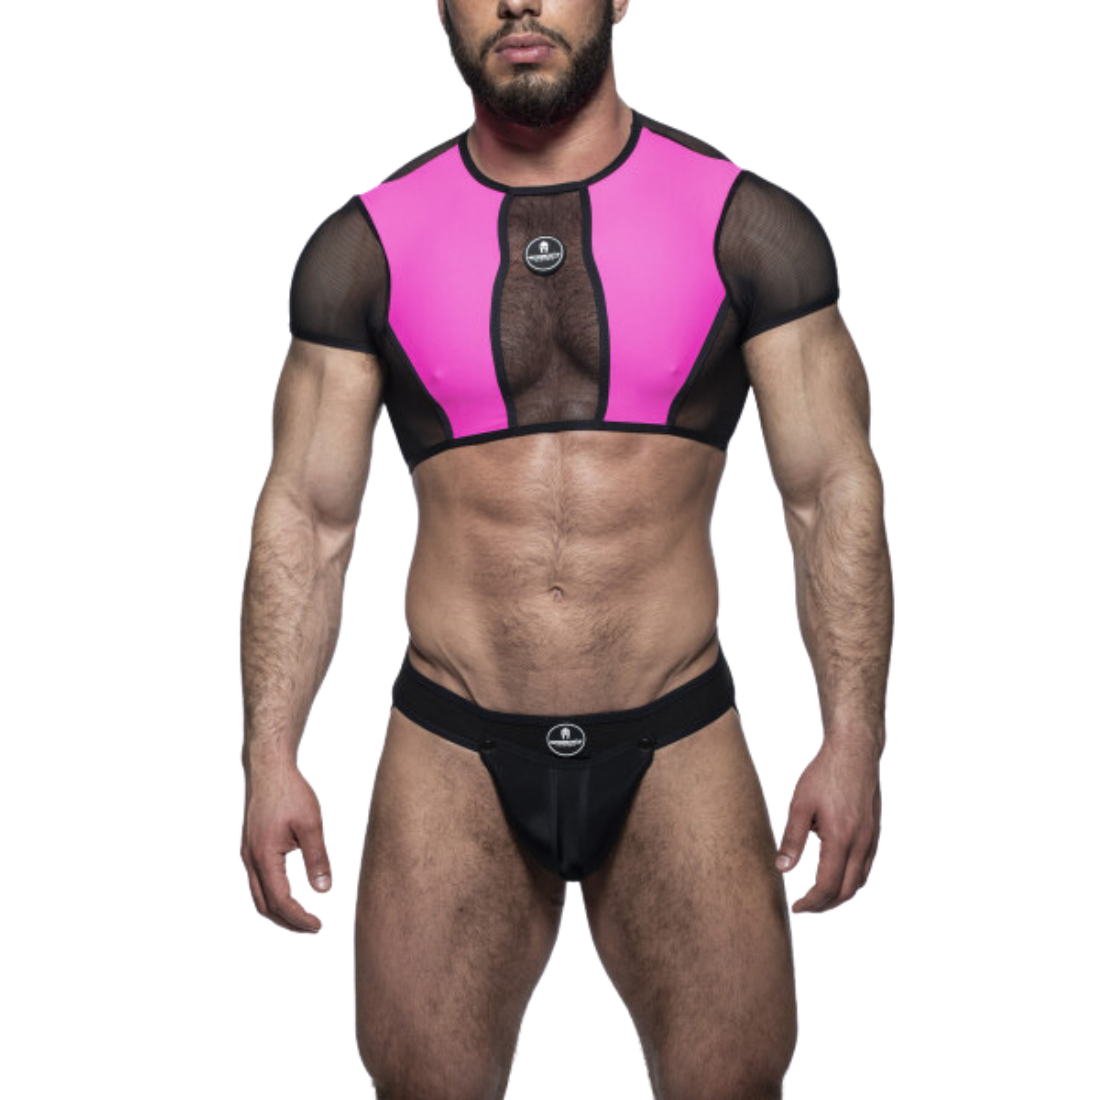 Roze crop top met zwarte meshstof, gemaakt door het fabuleuze Italiaanse merk Sparta’s Harness. Perfect voor gay mannen en te koop bij Flavourez.